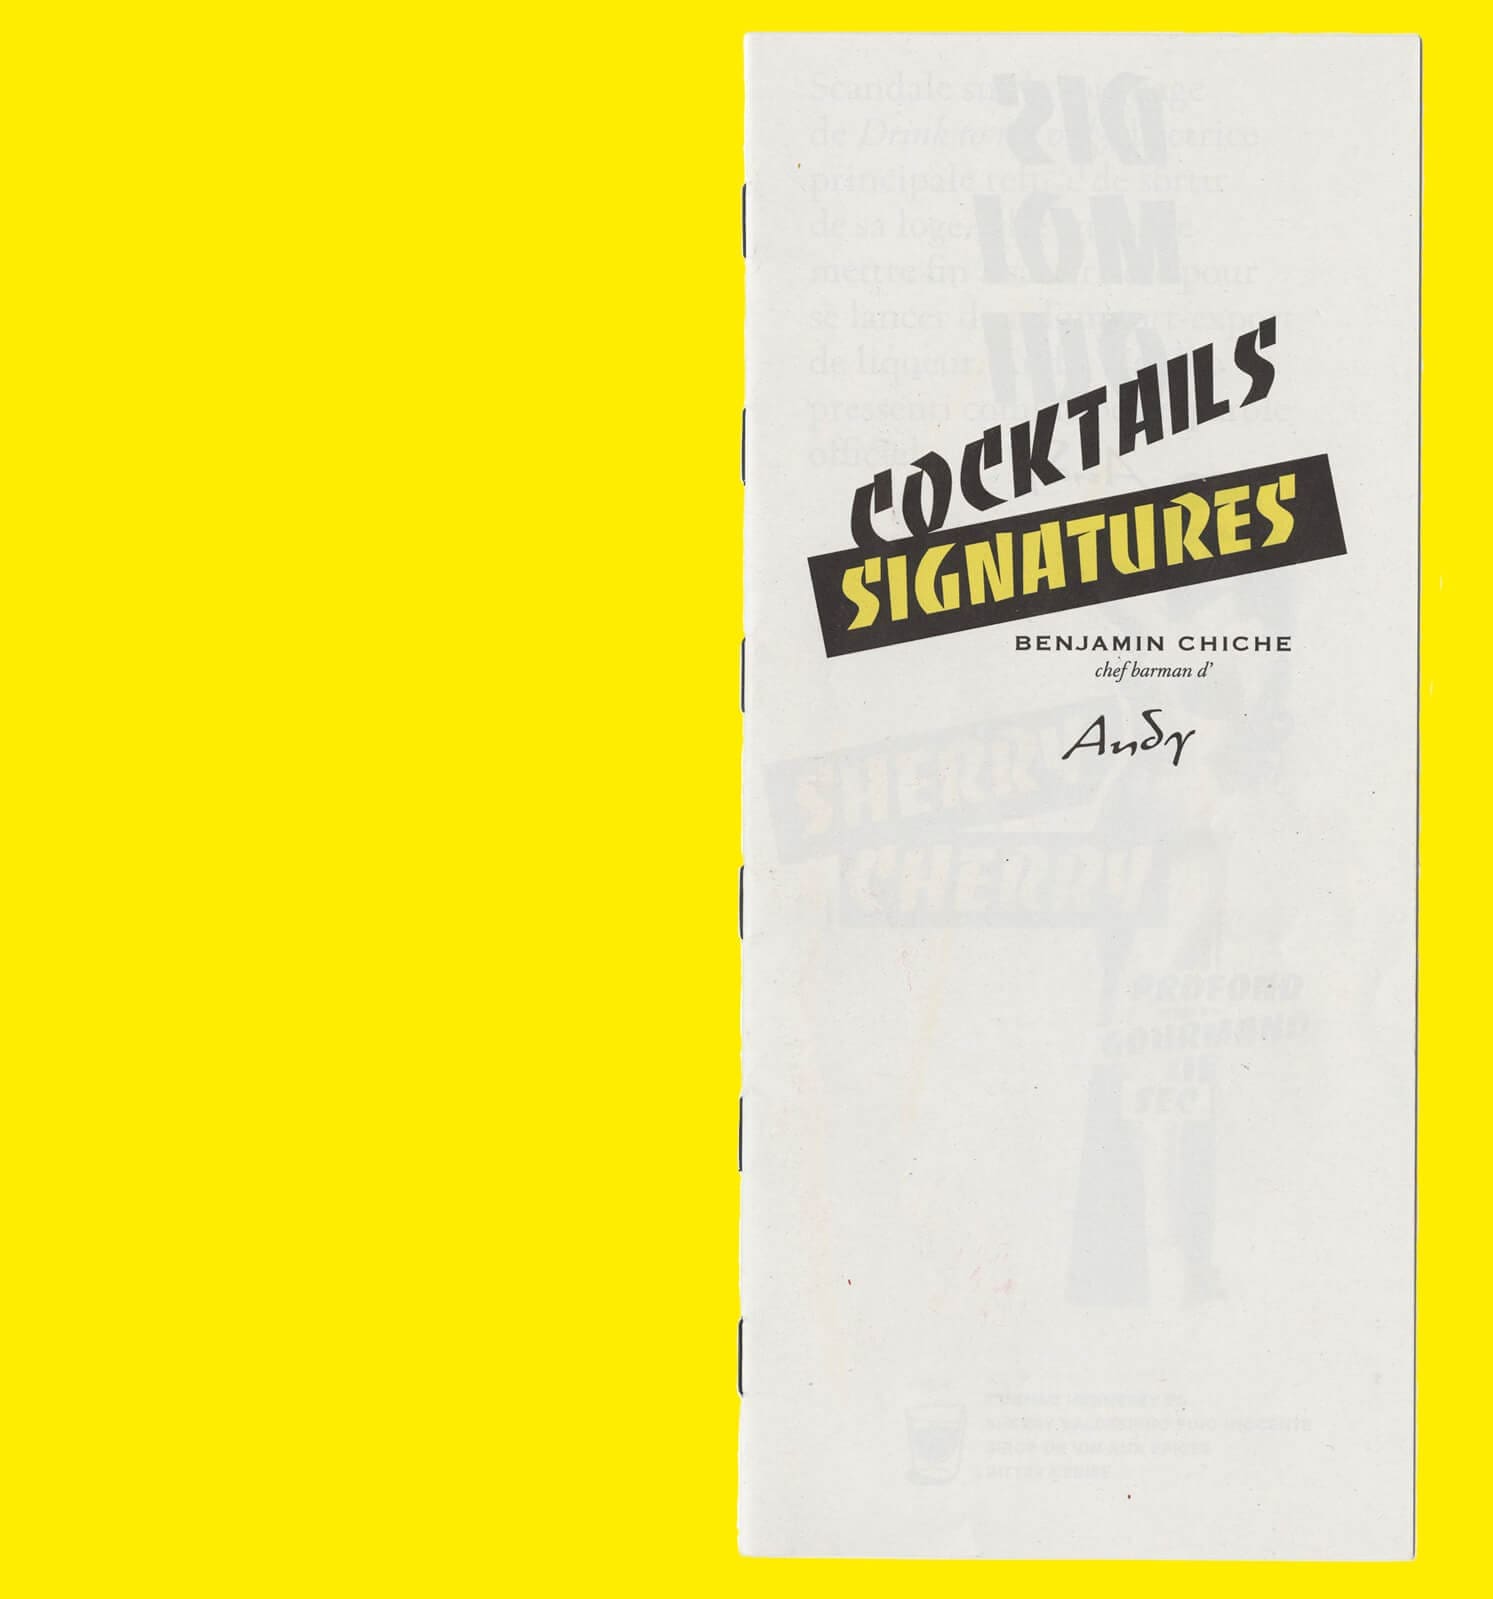 Couverture du fanzine punk, Cocktails Signatures 2018 du Andy Wahloo, design IchetKar